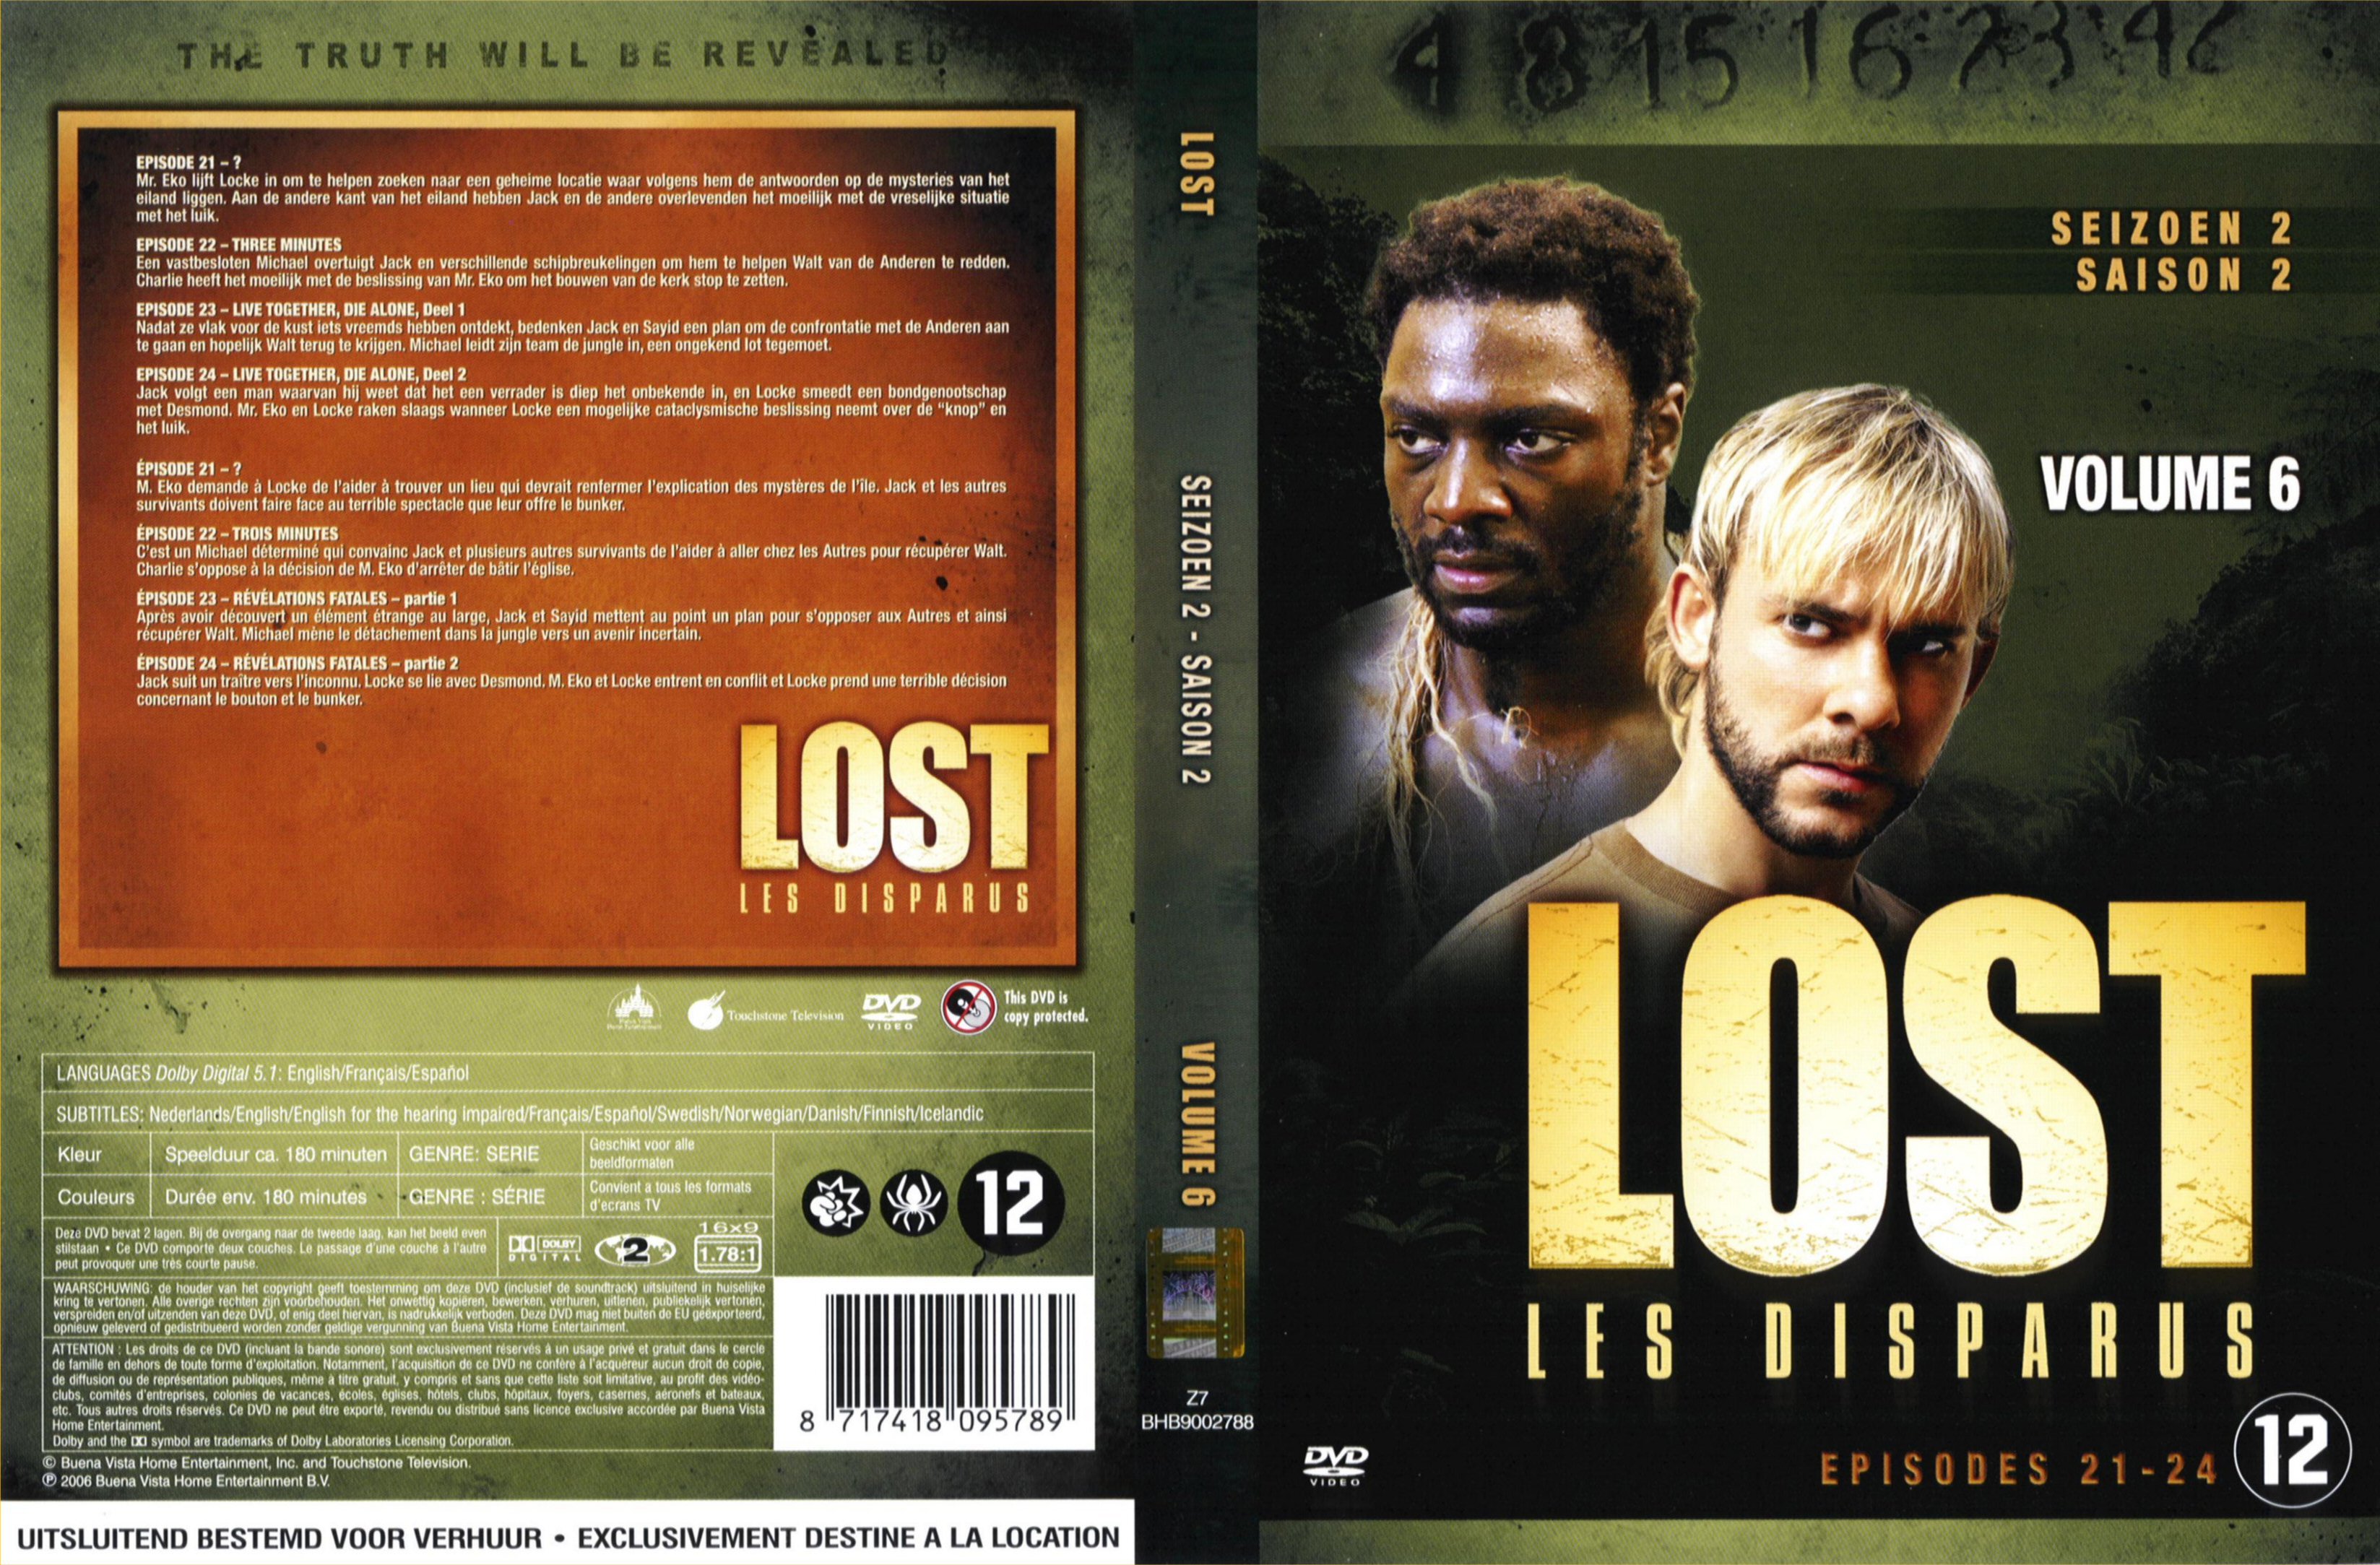 Jaquette DVD Lost Saison 2 DVD 6 v2